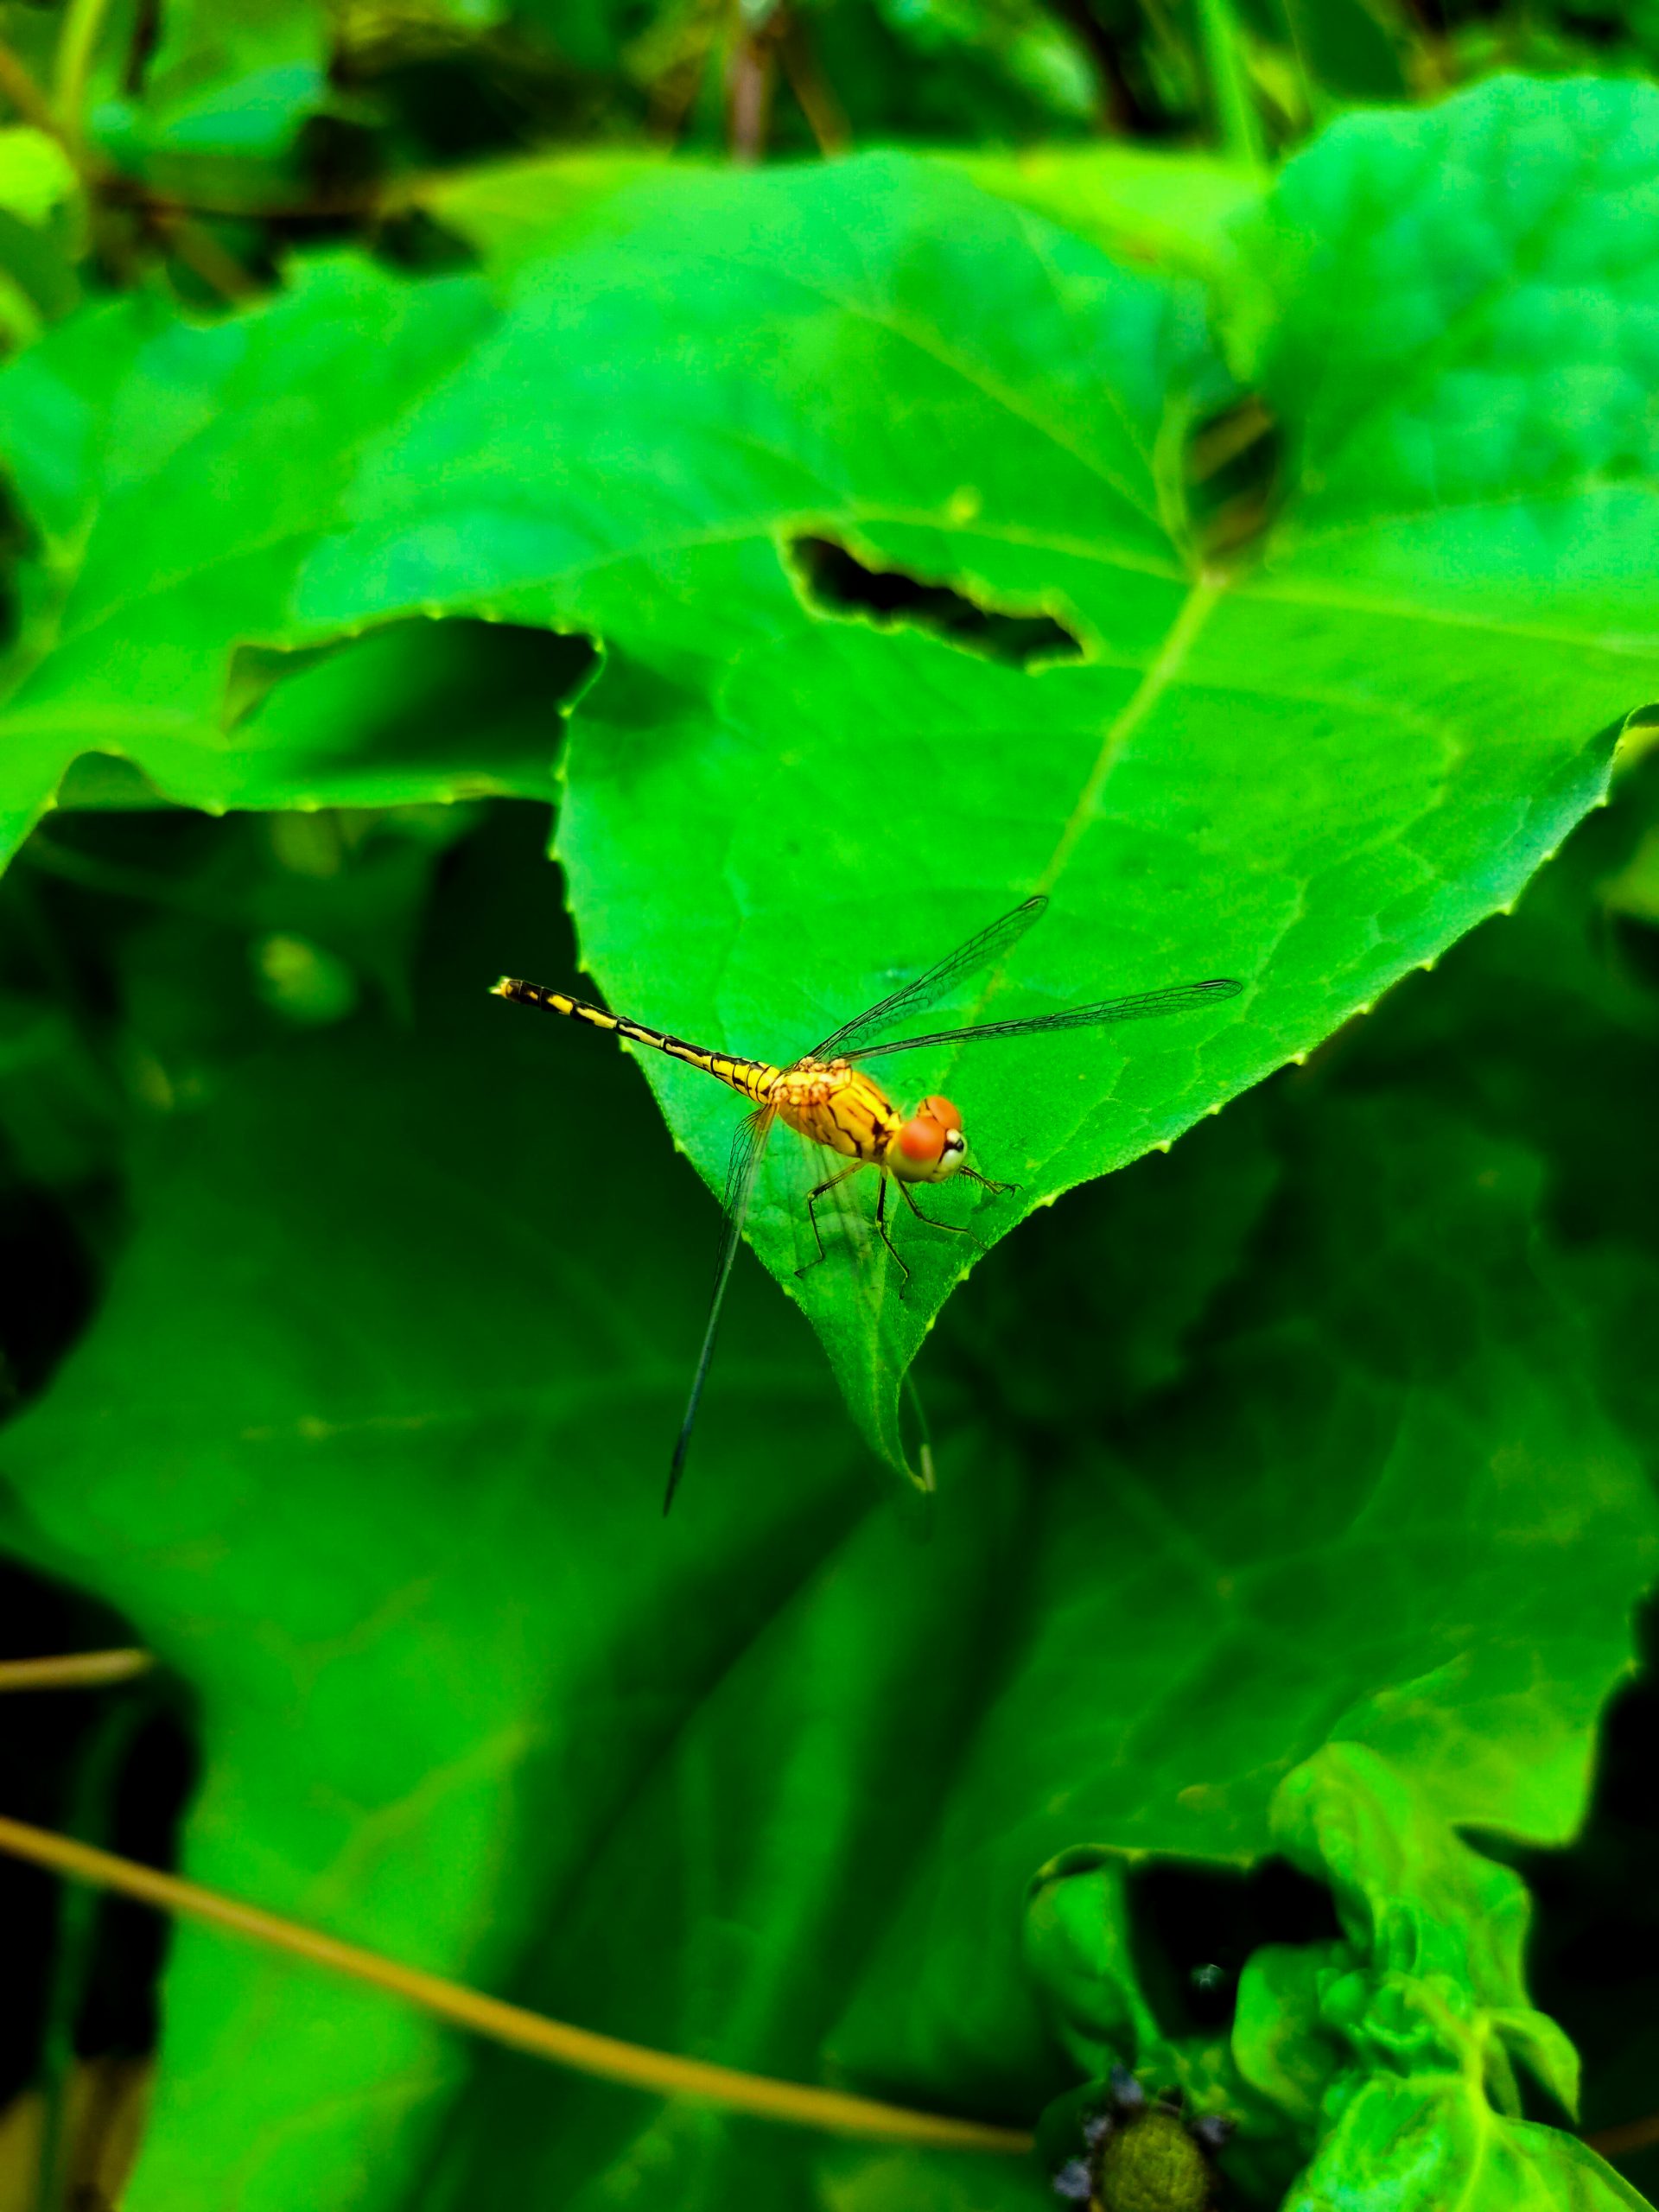 Dragon Fly on a leaf